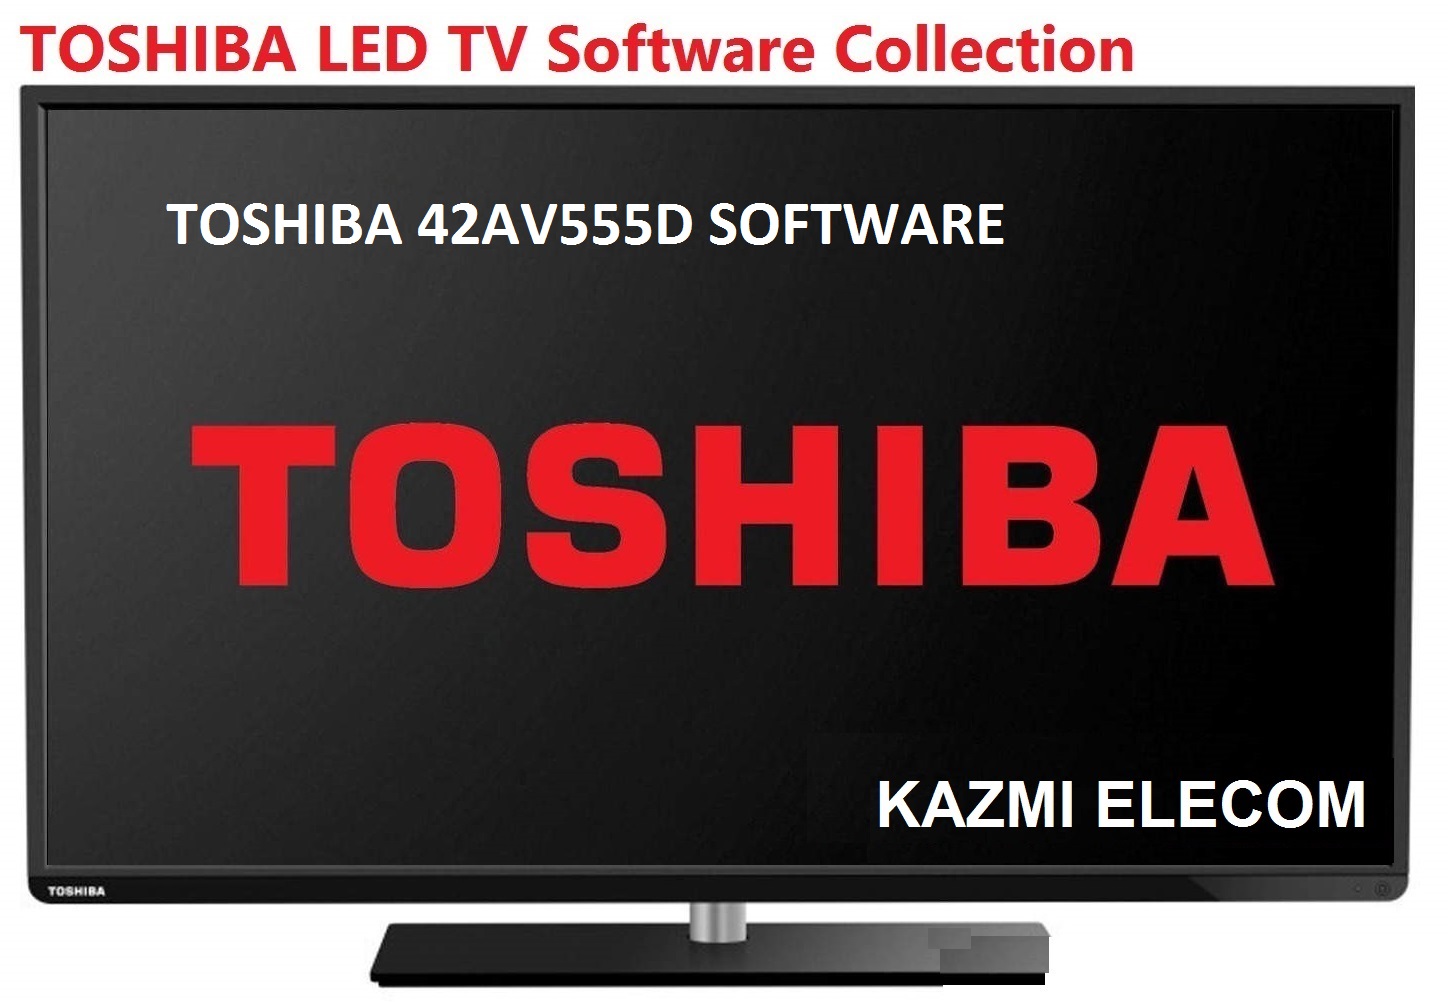 Toshiba 42Av555D